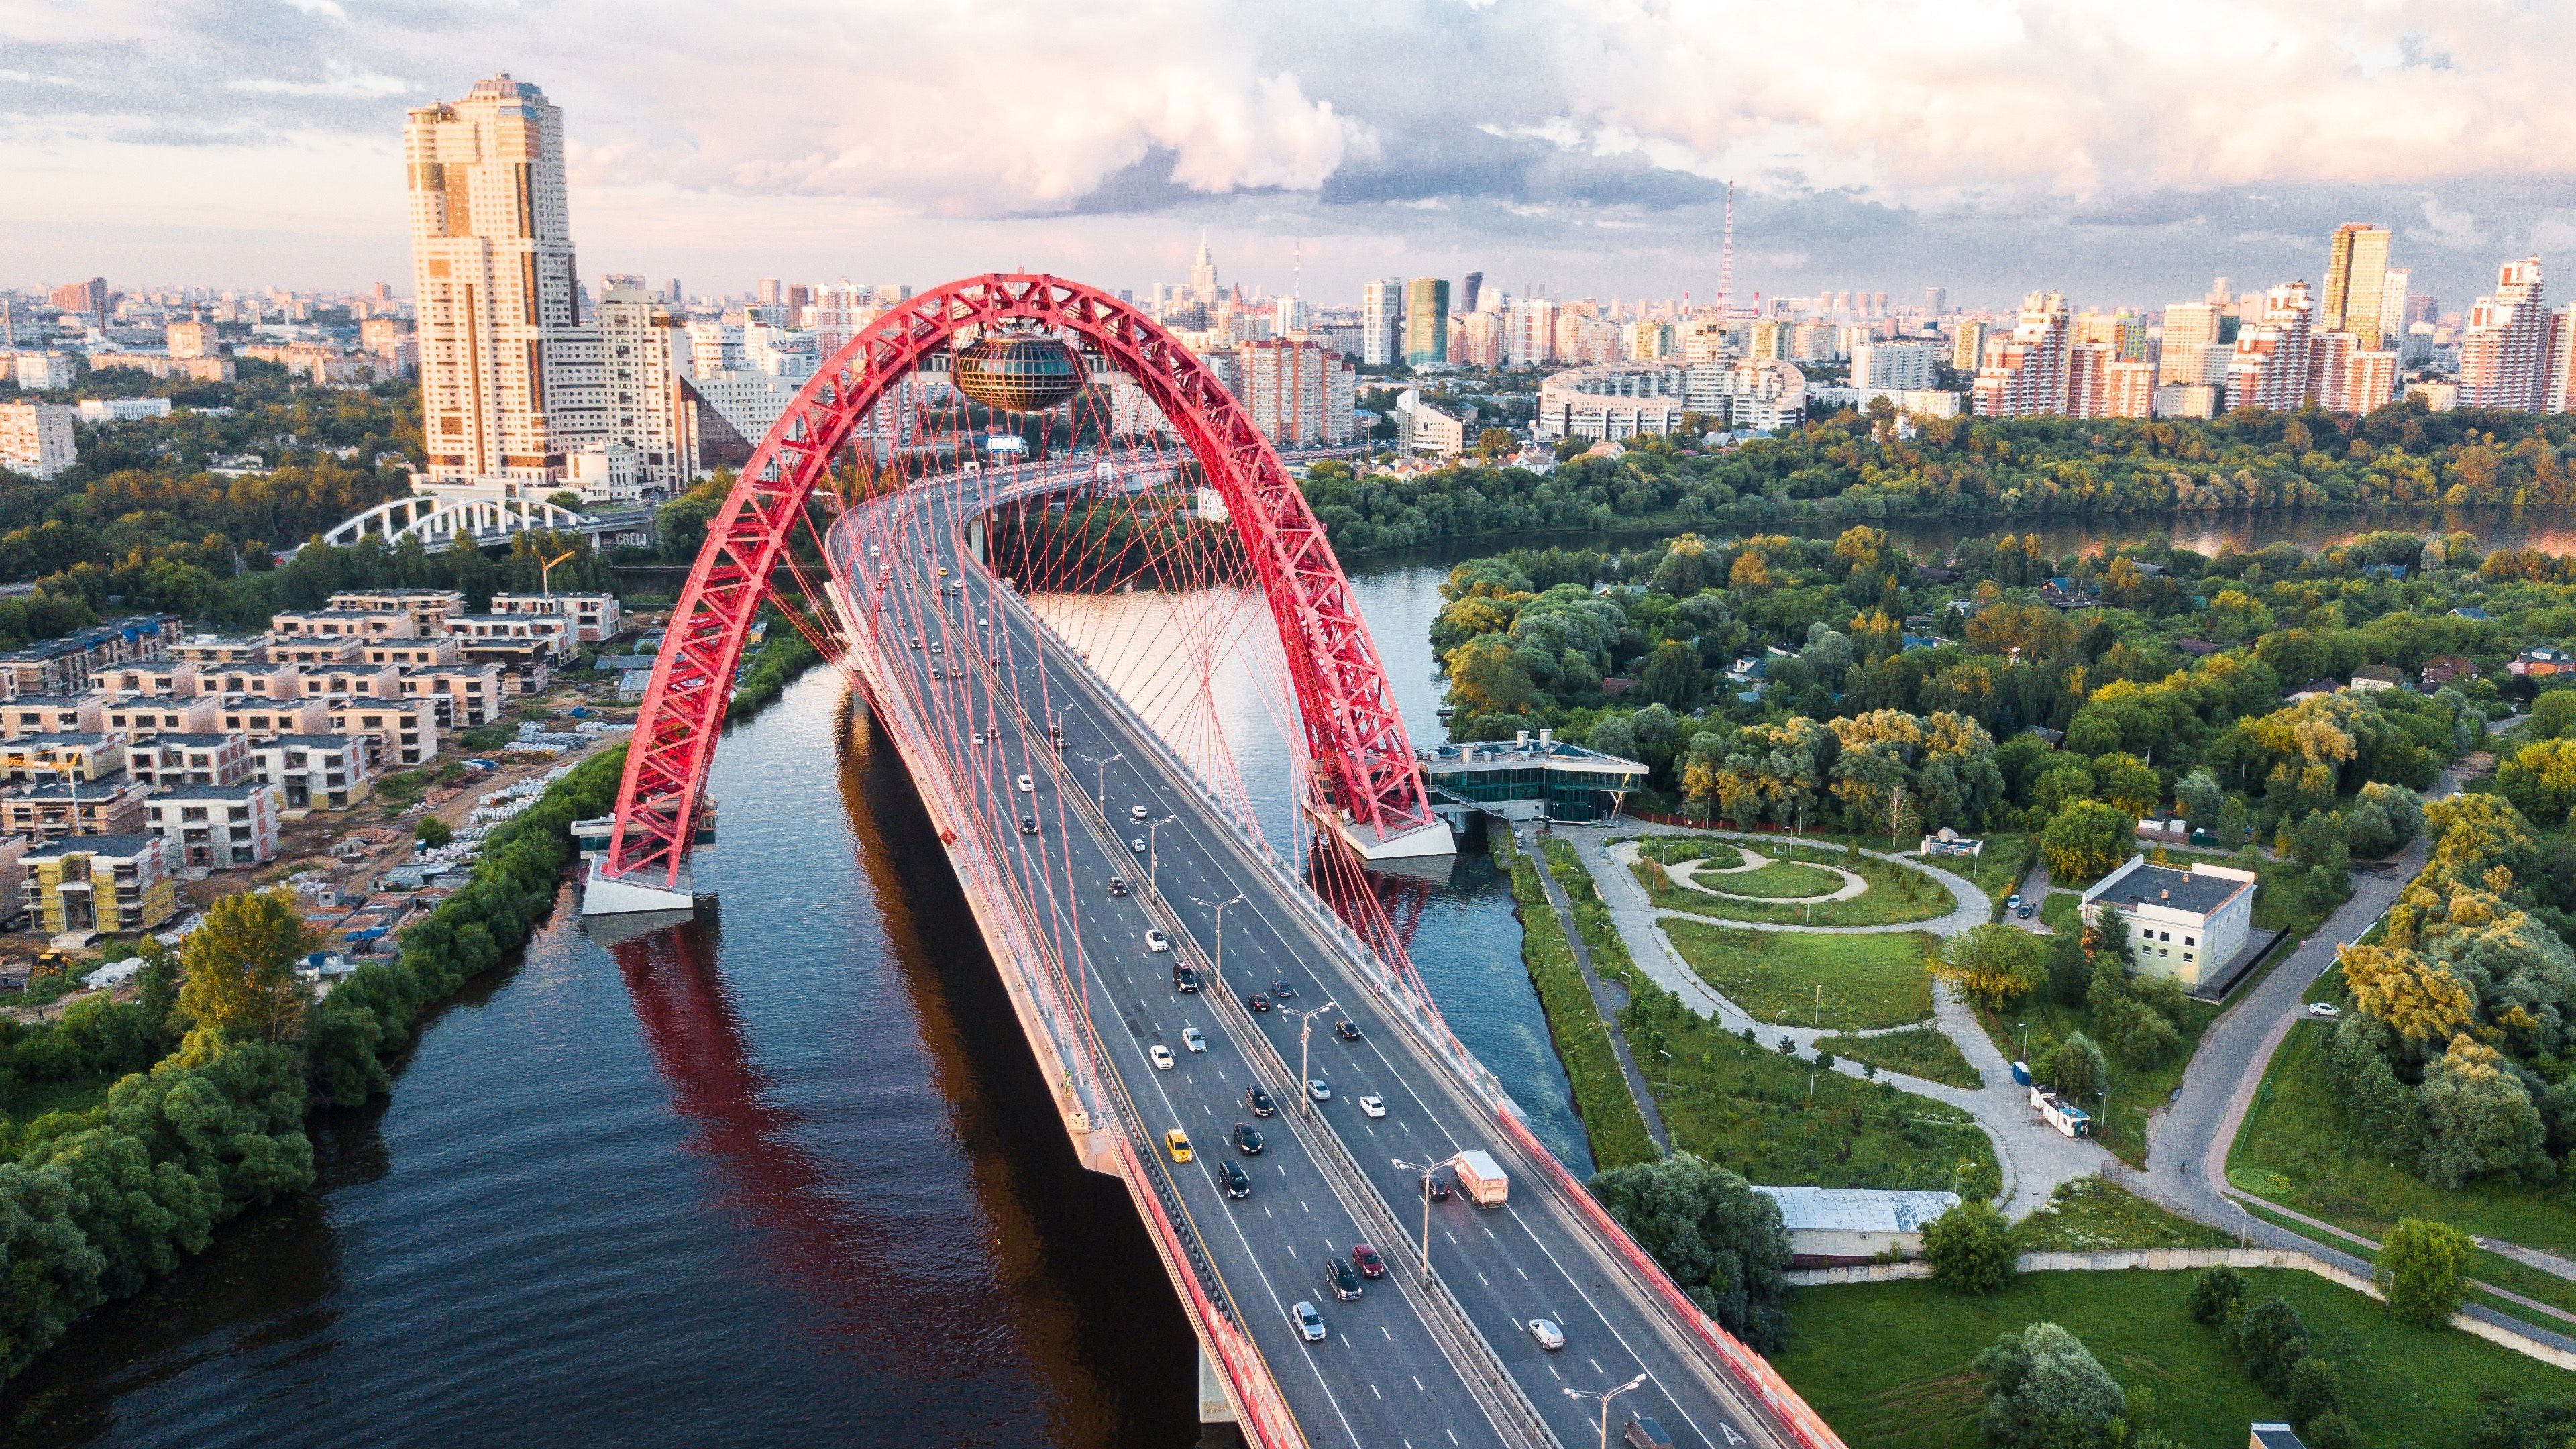 Zhivopisniy Bridge in Moscow Russia 4K Ultra HD Wallpaper